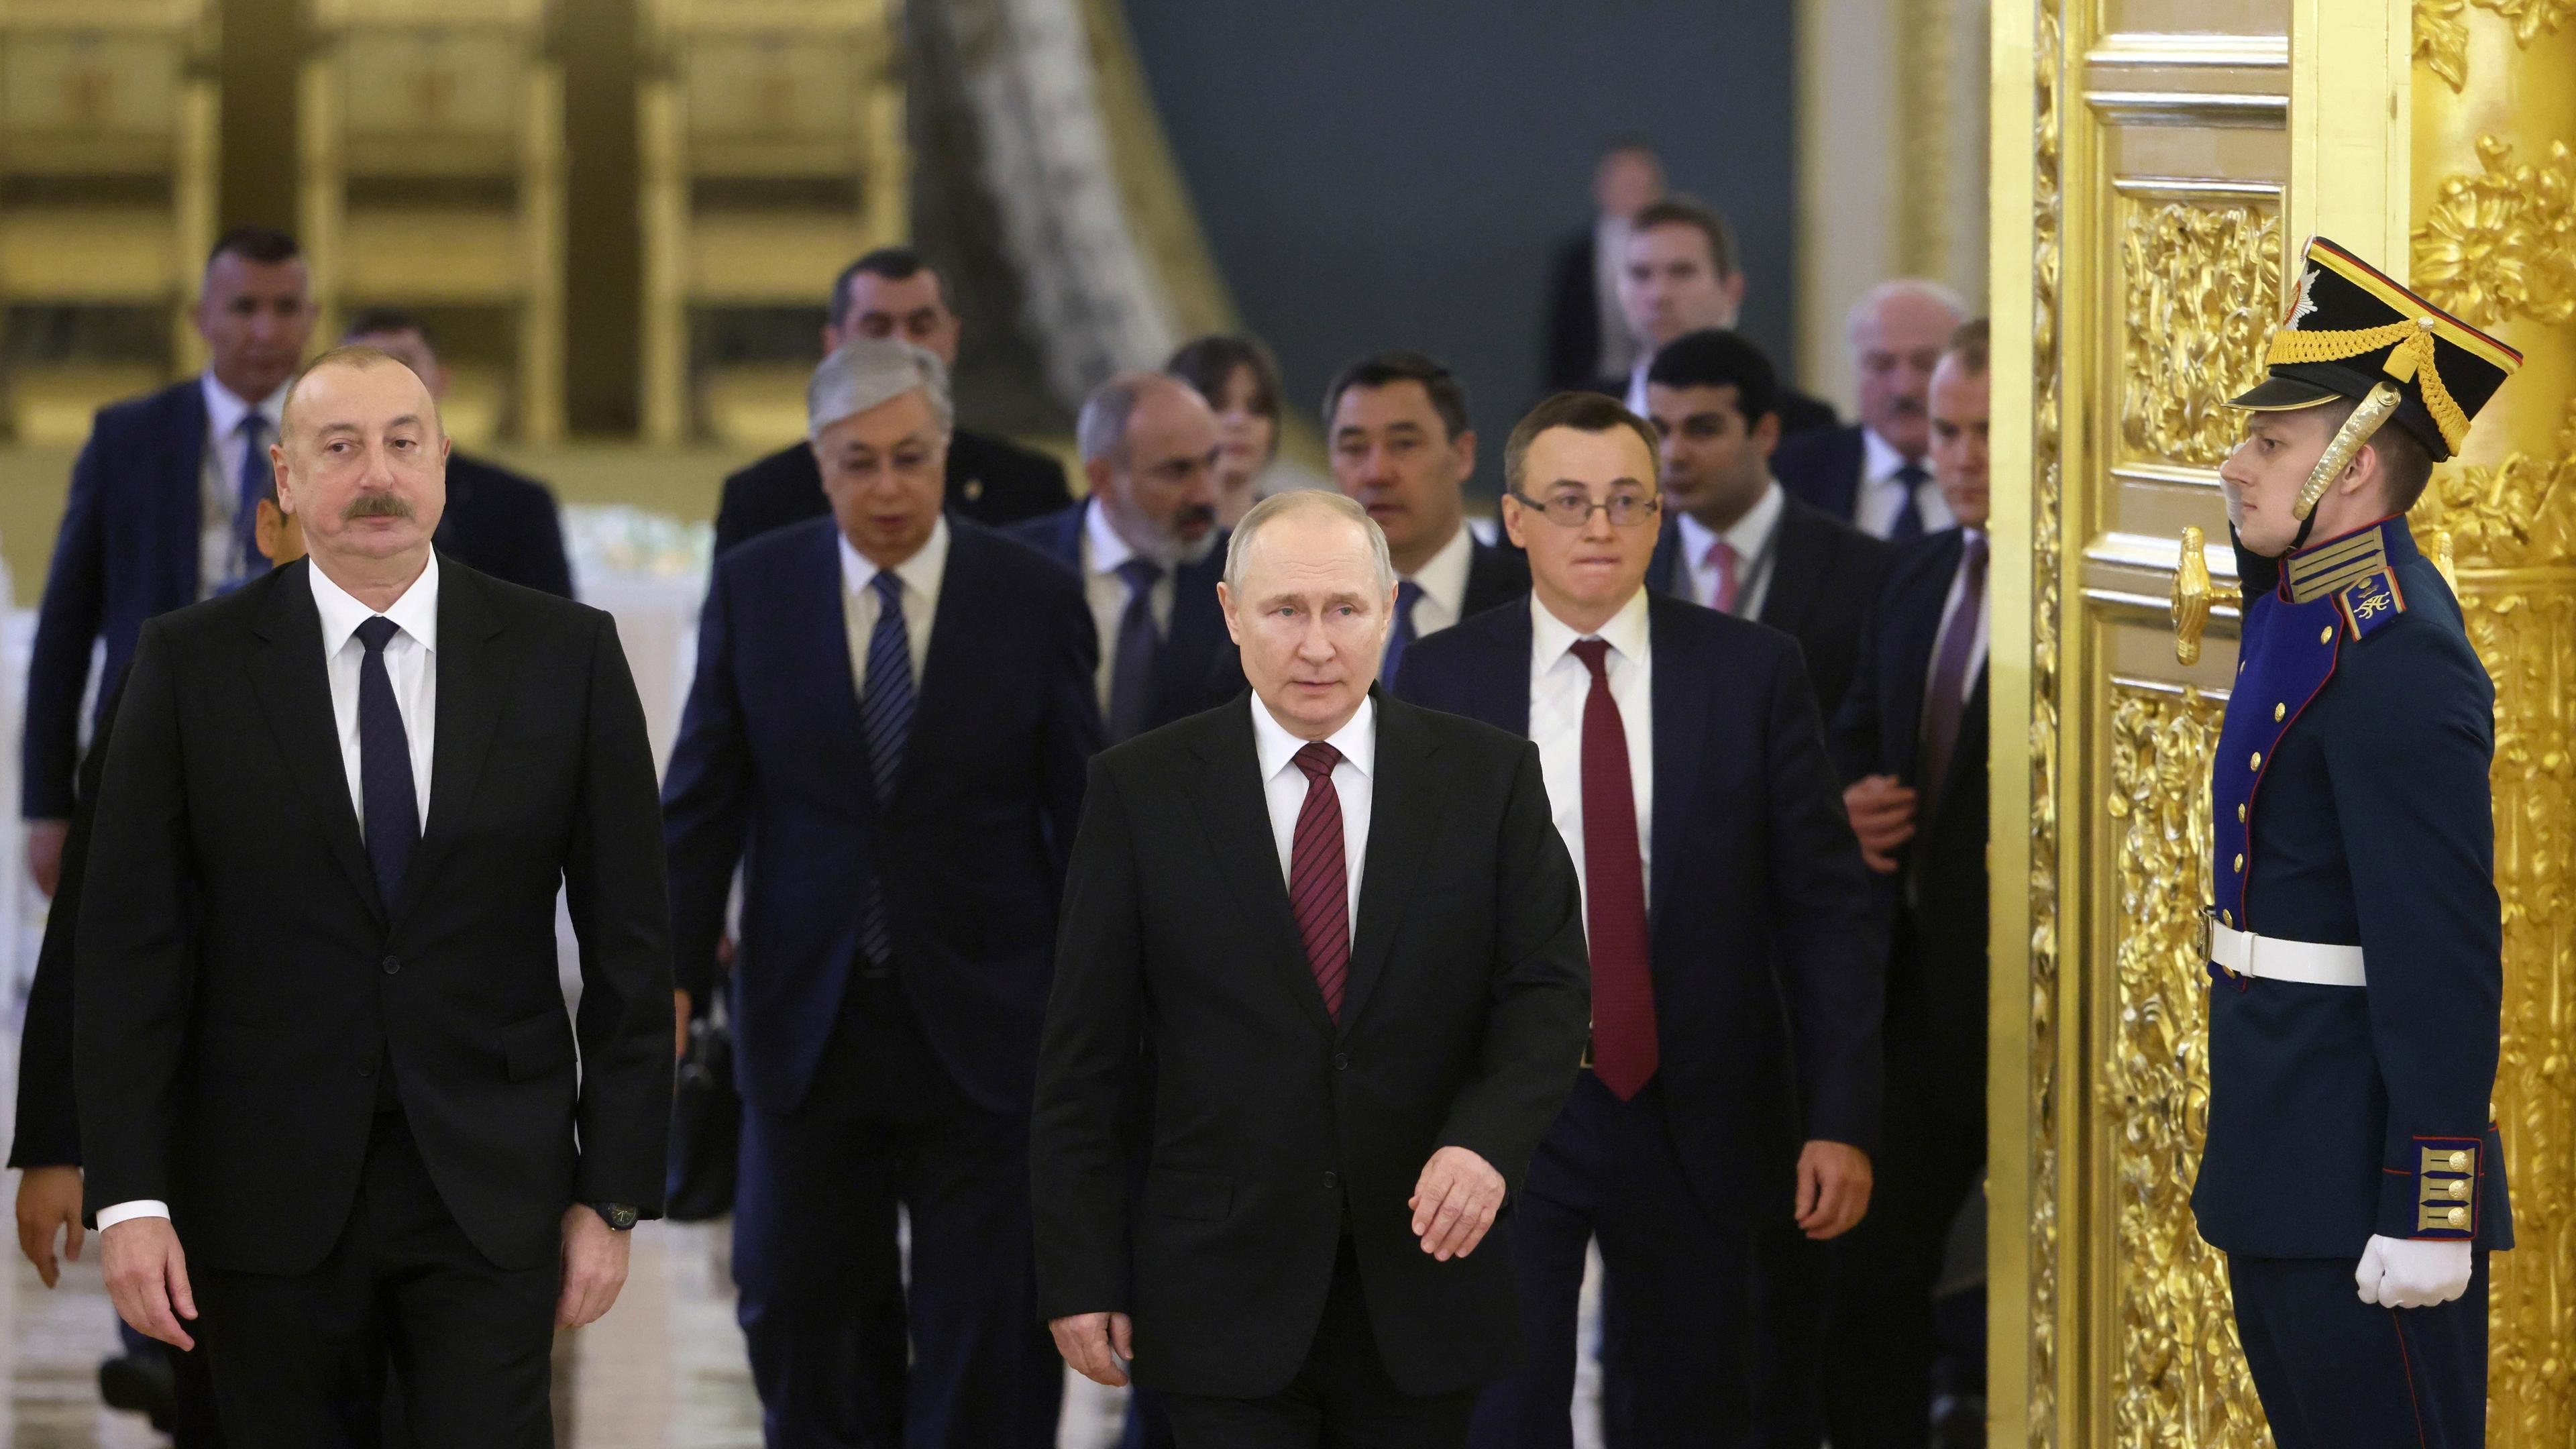  Russland, Moskau: Das von der staatlichen russischen Nachrichtenagentur Sputnik via AP veröffentlichte Bild zeigt Ilham Alijew (l-r), Präsident von Aserbaidschan, Kassym-Schomart Tokajew, Präsident von Kasachstan, Nikol Paschinjan, Premierminister von Armenien, Wladimir Putin, Präsident von Russland, Sadyr Dschaparow, Präsident von Kirgistan und andere Beamte auf dem Weg zu einer Sitzung des Obersten Eurasischen Wirtschaftsrates im Kreml.